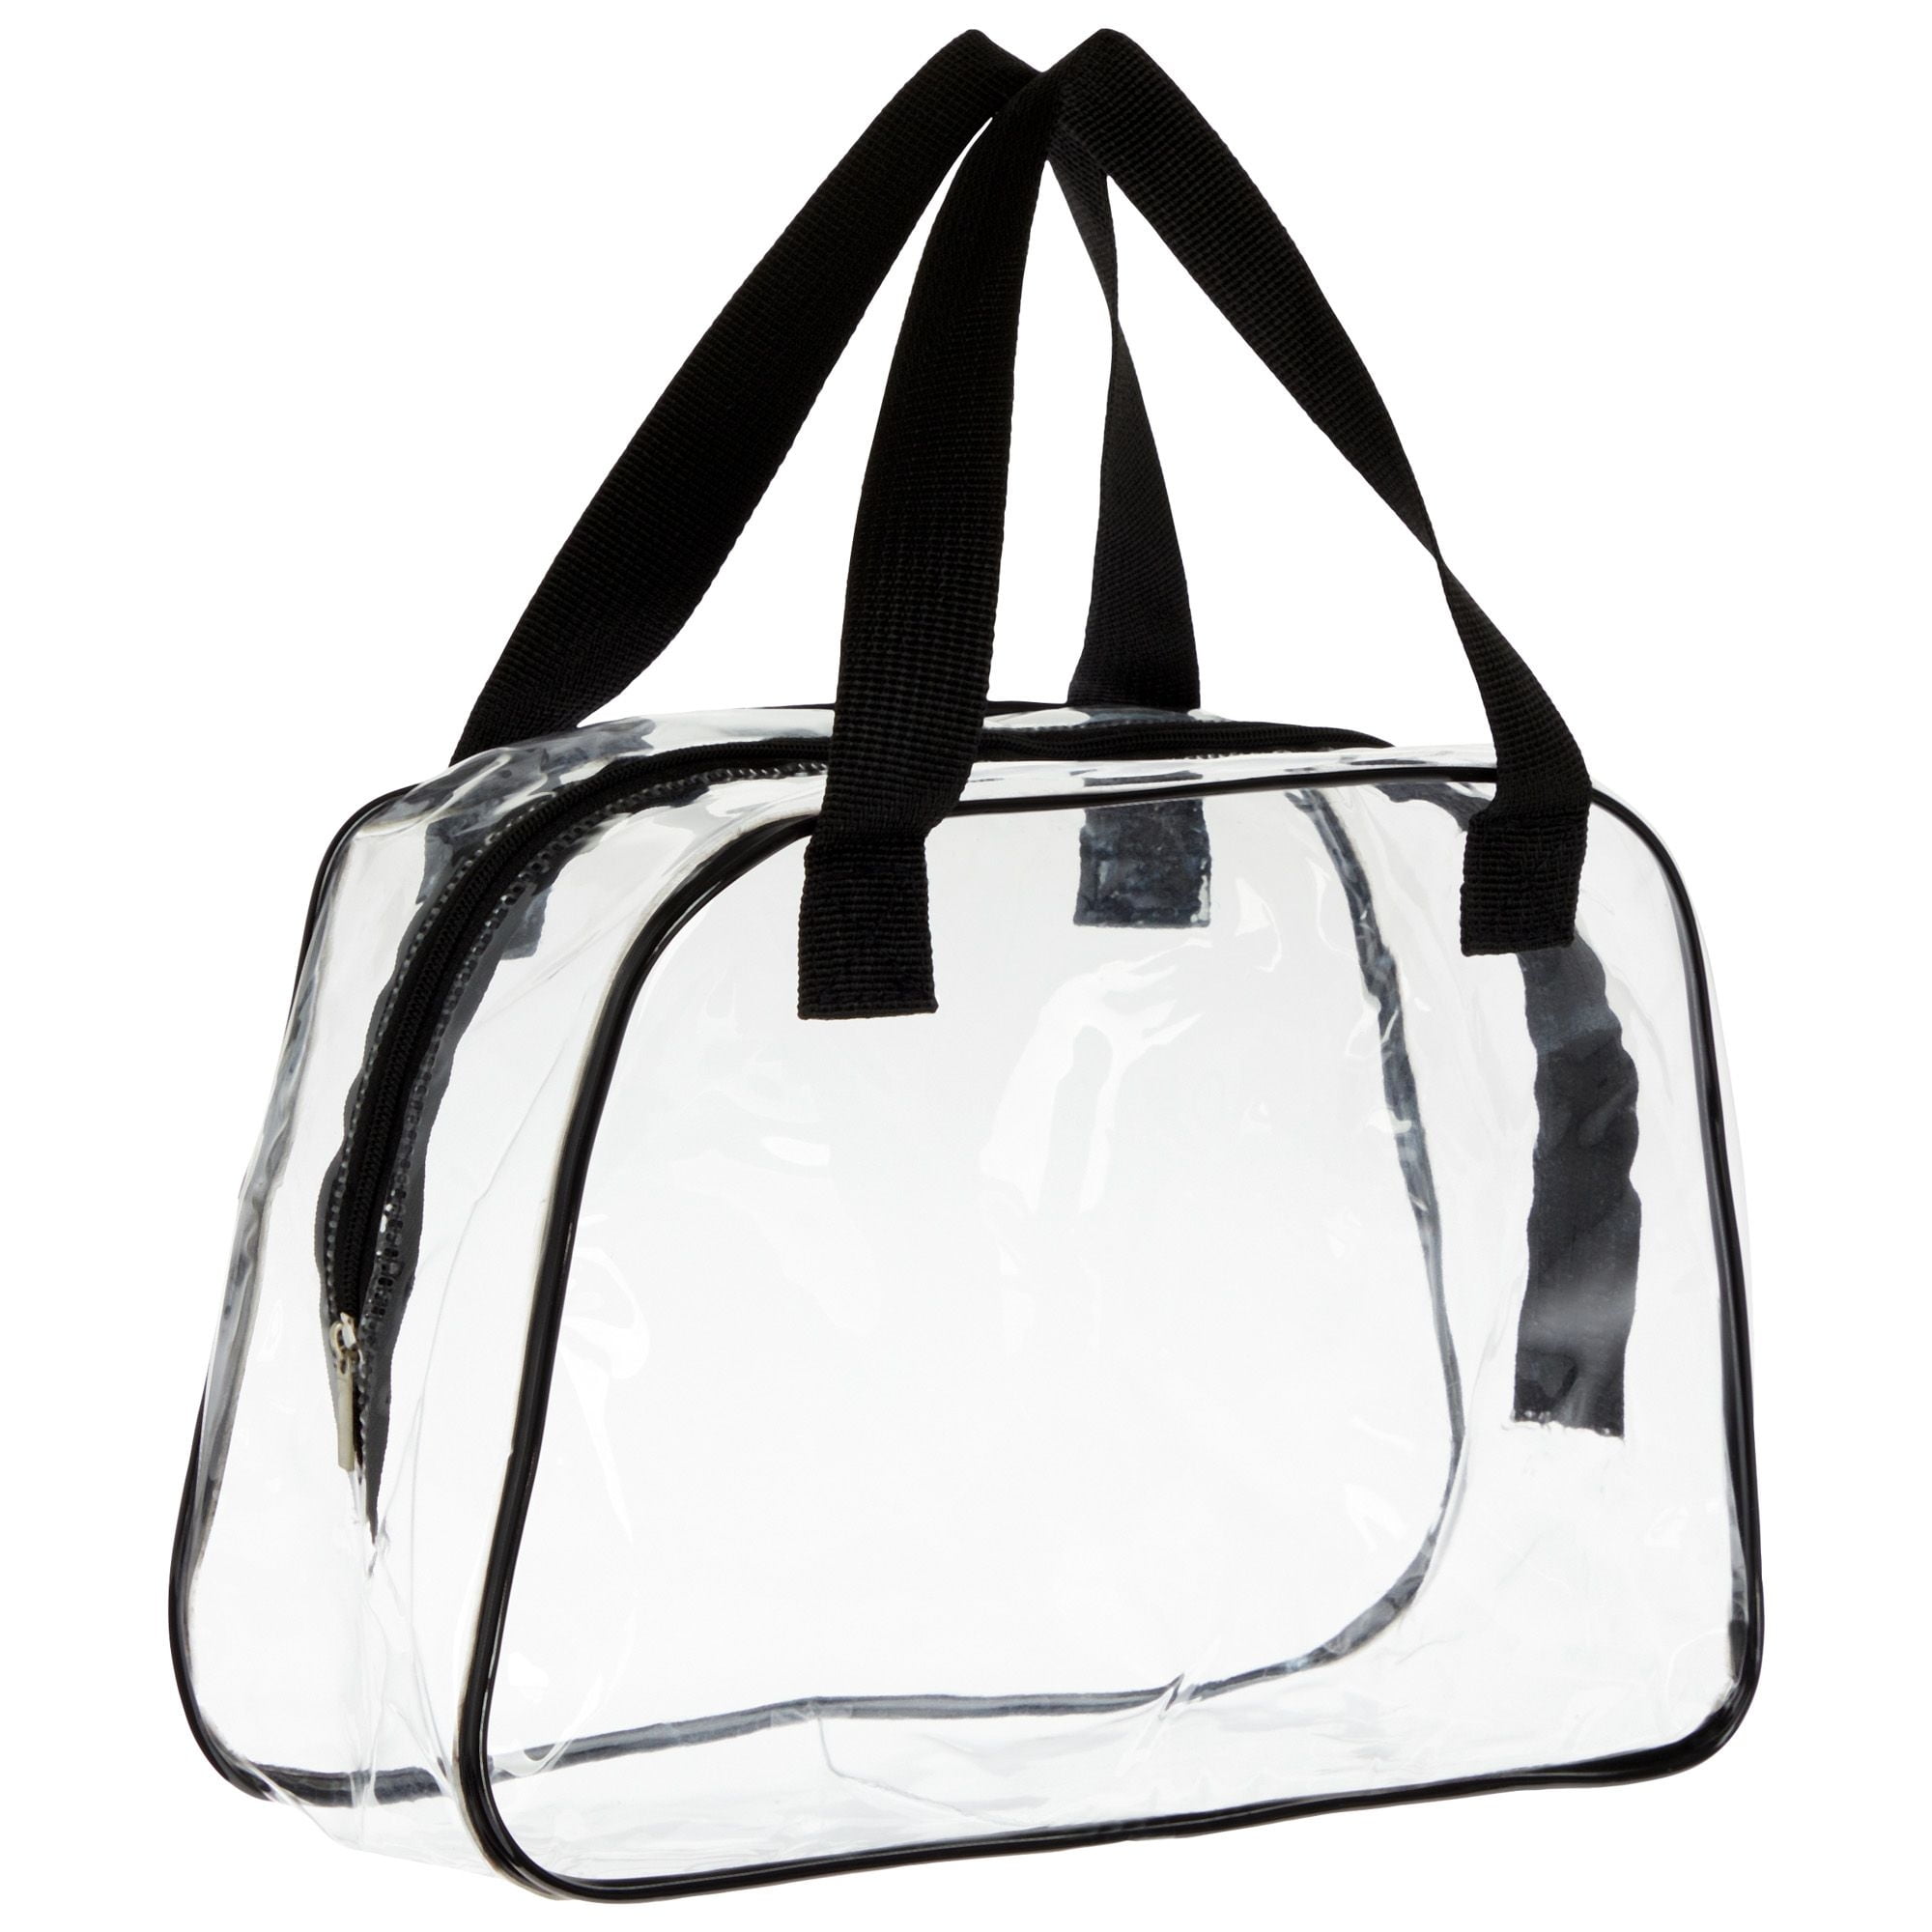 11W x 7L x 5D, White, Security Purse, Vinyl Bags - Action Bags